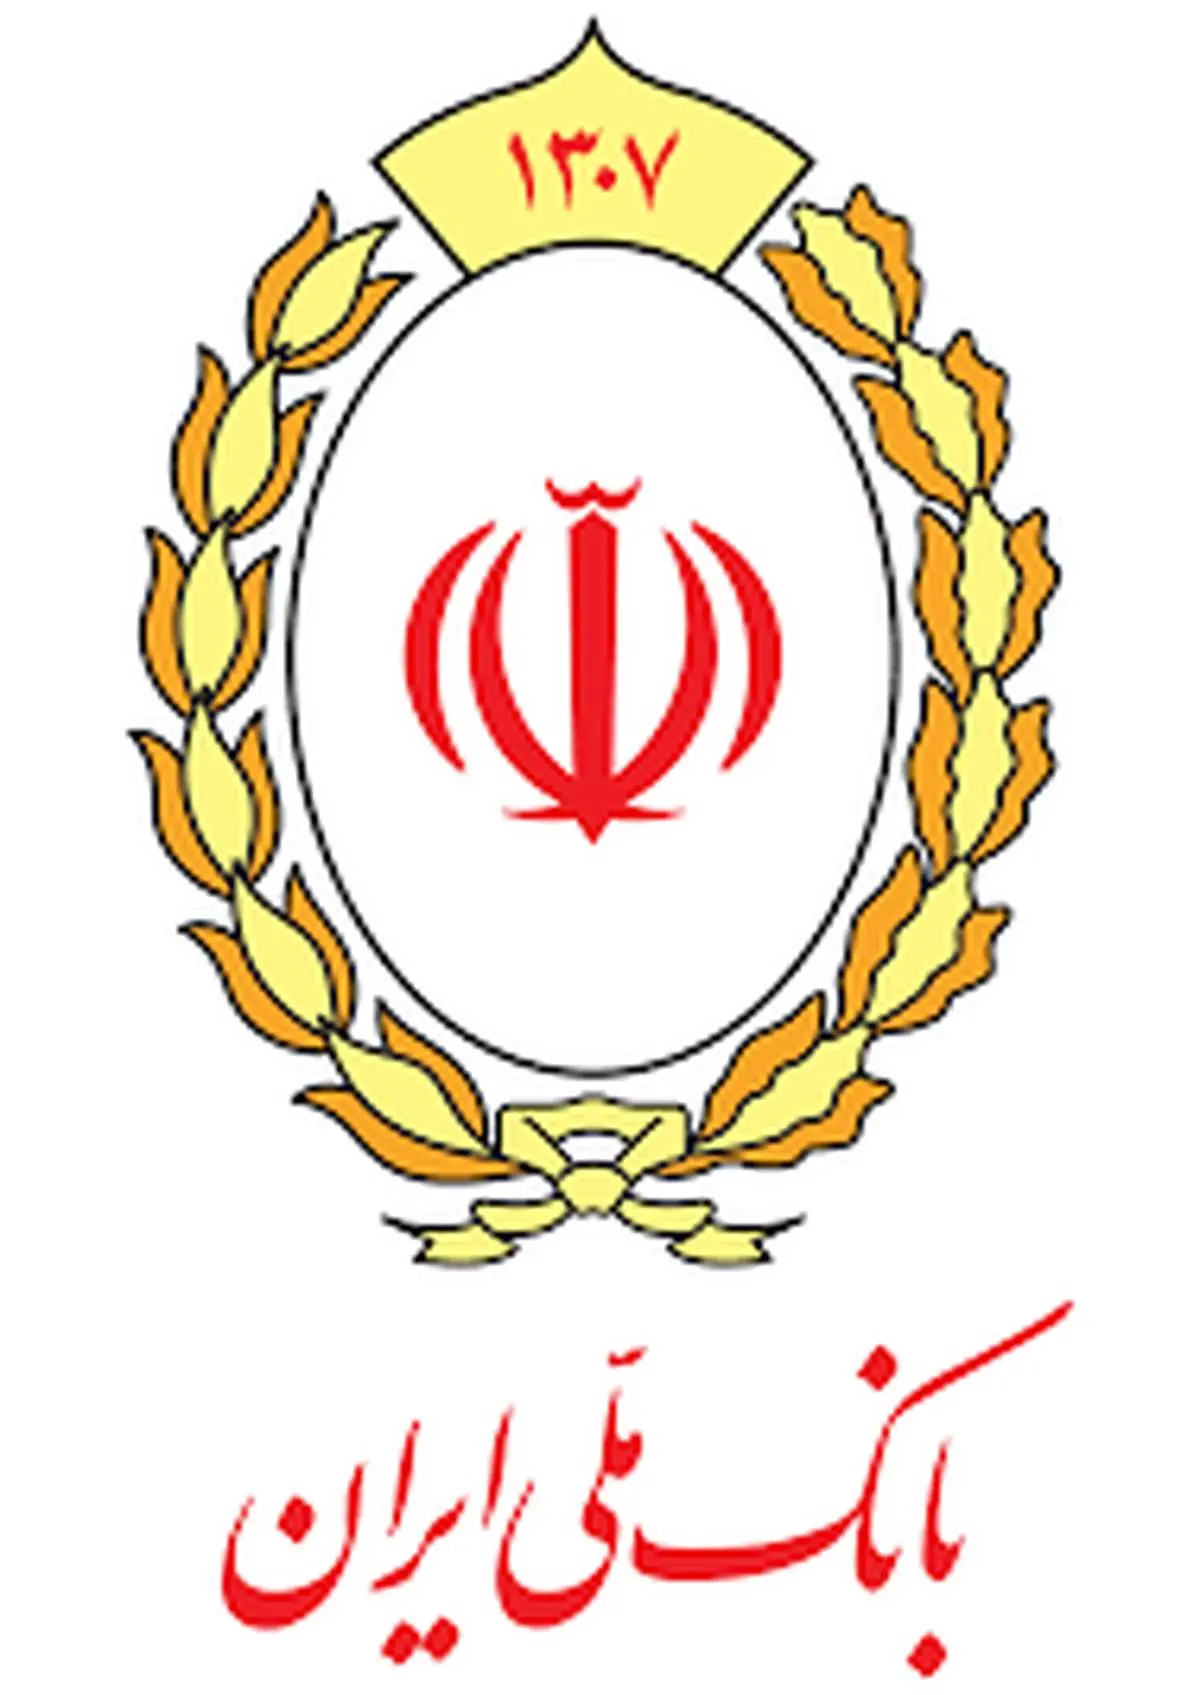 مسابقه کانون جوانه ها به مناسبت 93 سالگی بانک ملی ایران
